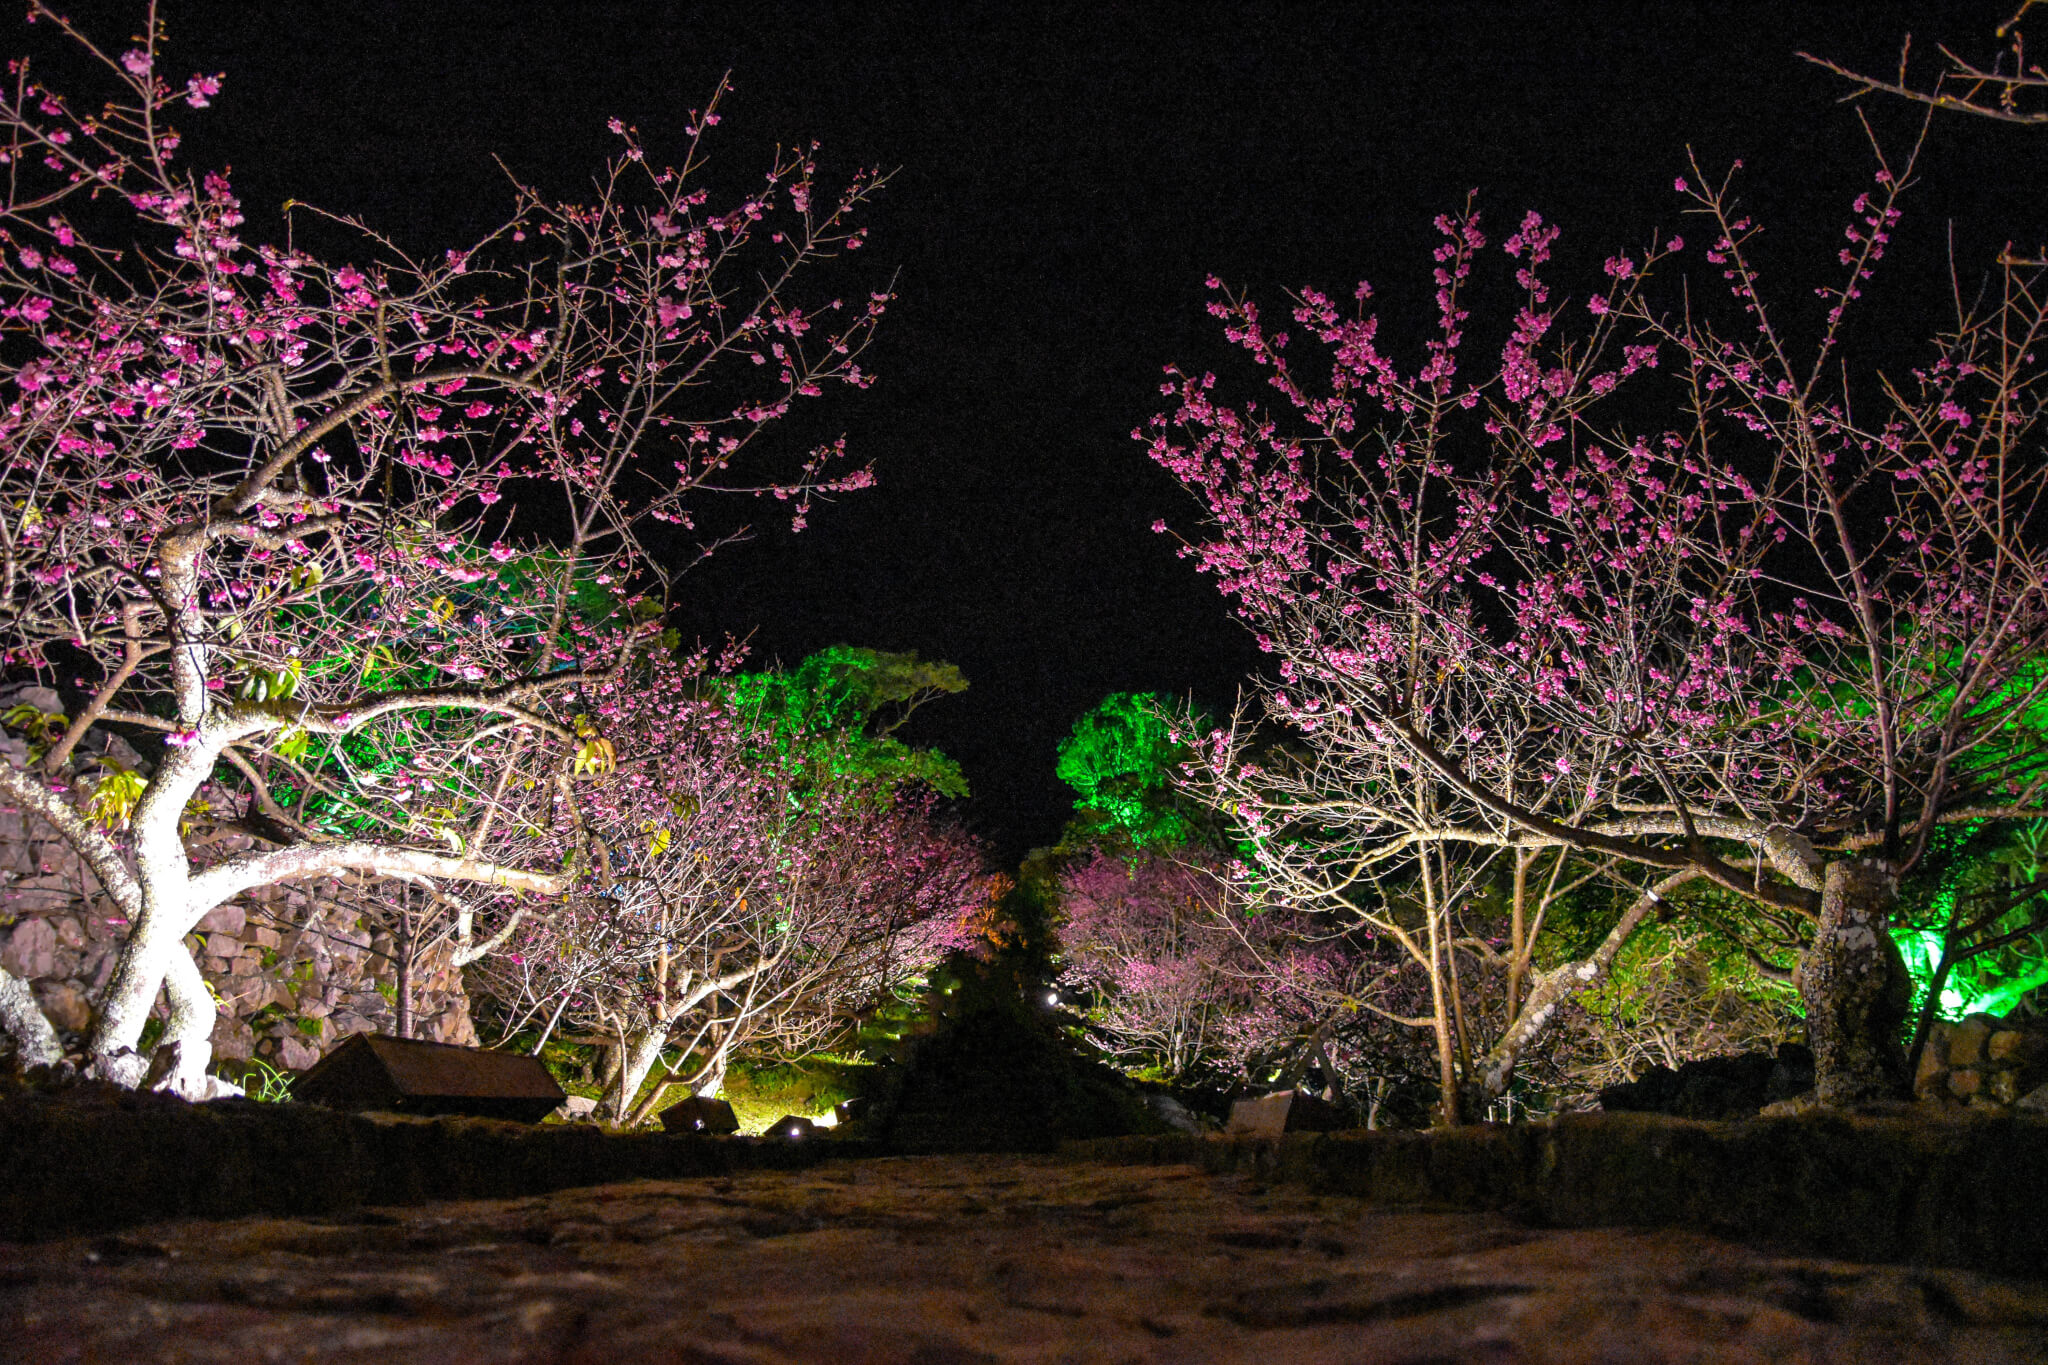 沖縄で夜桜を楽しむなら世界遺産の今帰仁城跡がオススメ 今帰仁グスク桜まつり Taamii Com たーみーどっとこむ